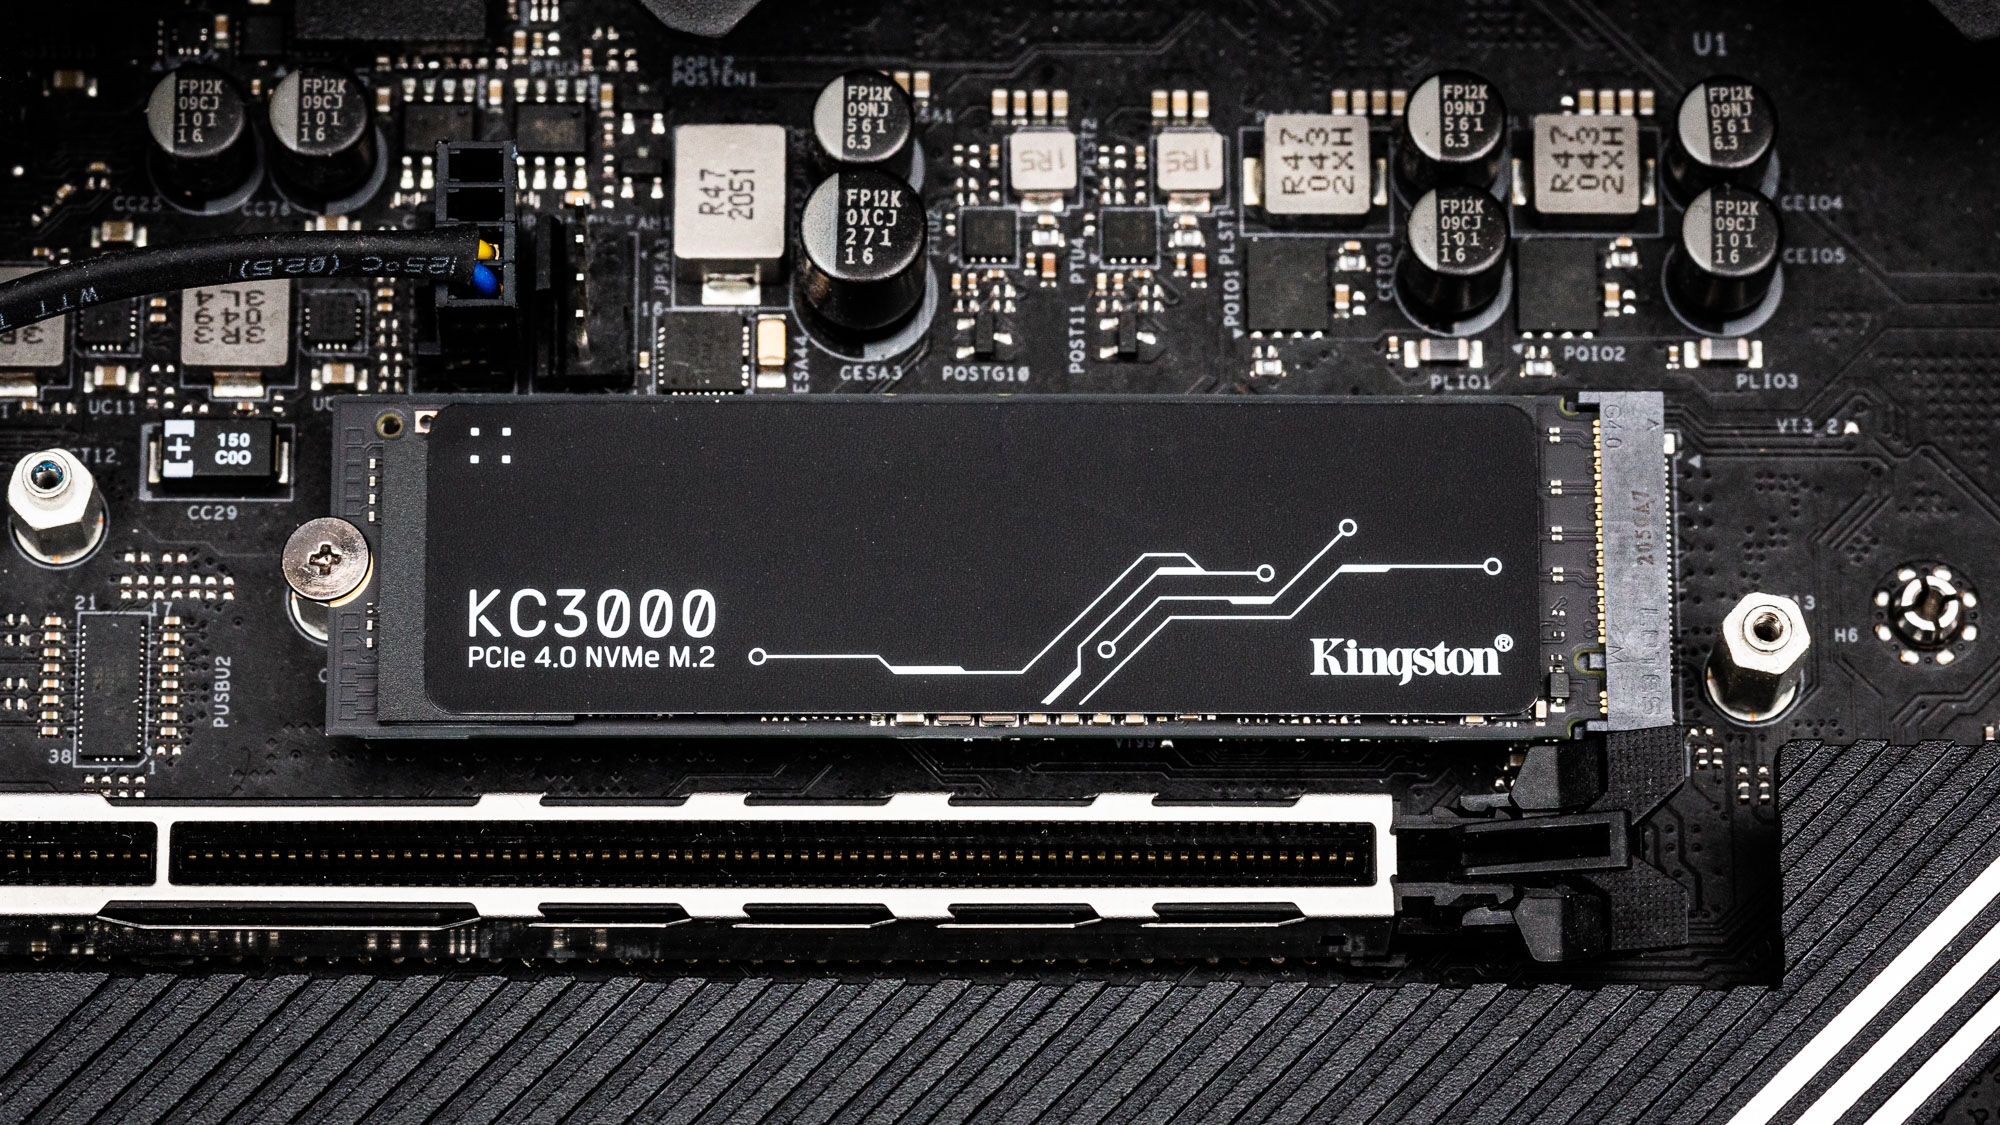 Cel mai rapid SSD: Kingston KC3000